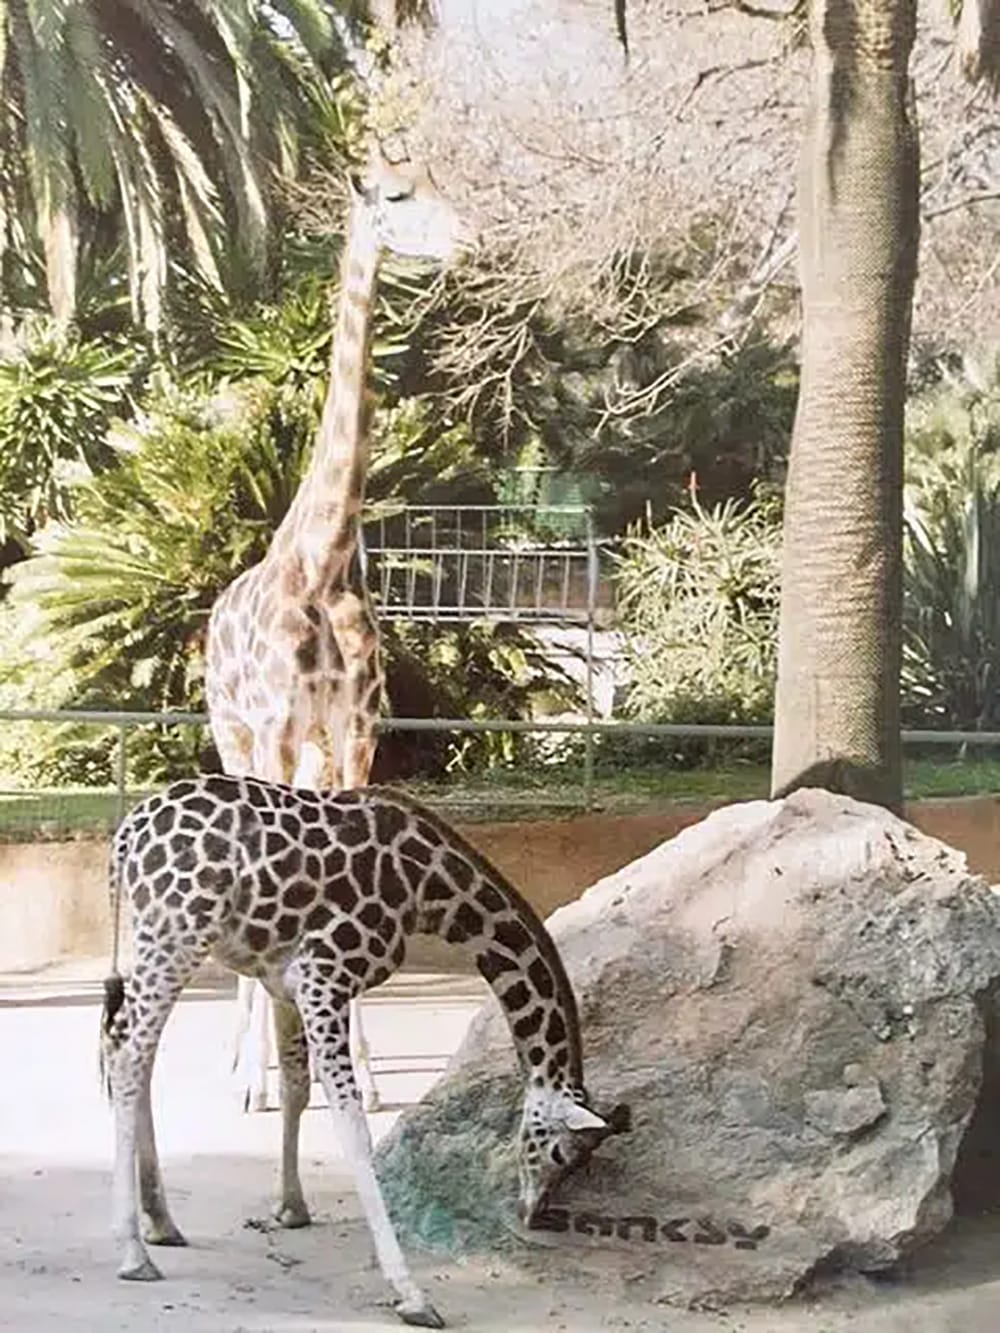 Signature de Banksy dans l'enclos des girafes - zoo Barcelone